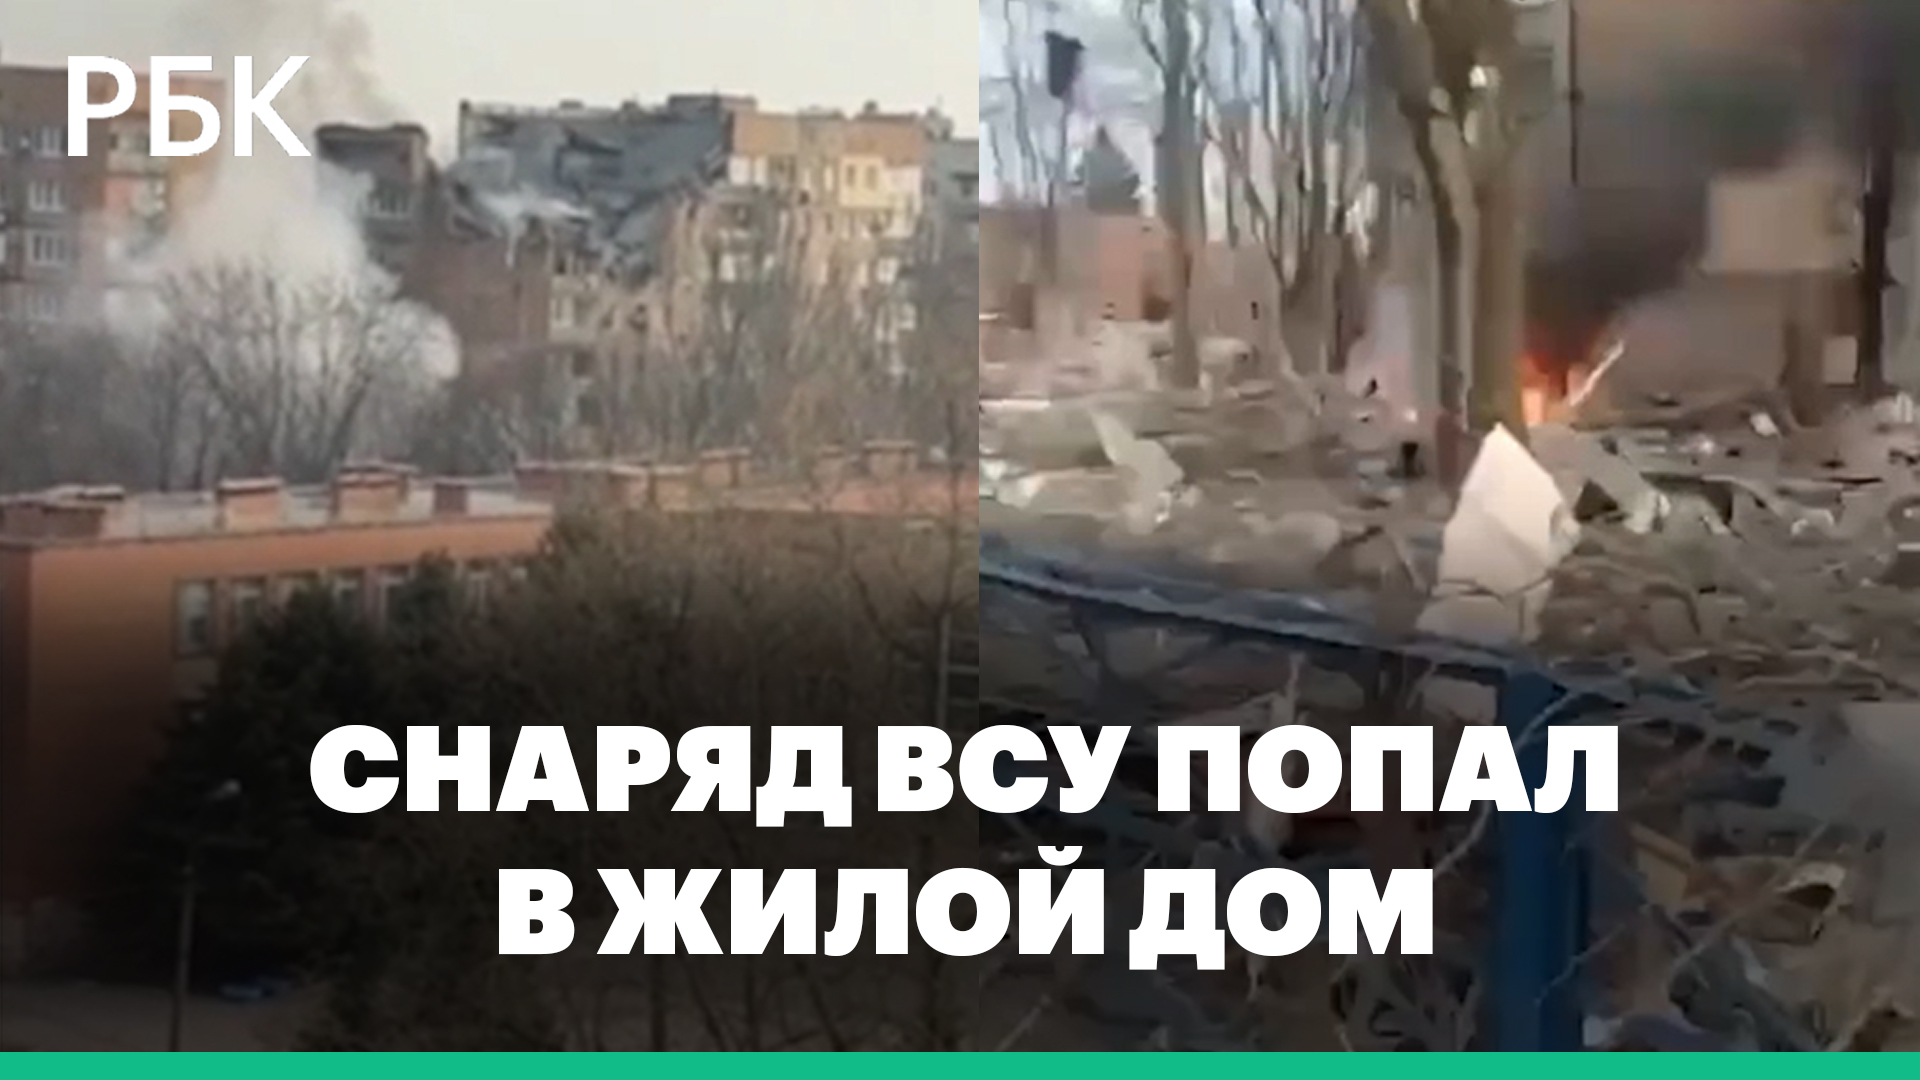 Очевидцы рассказали о попадании украинского снаряда в жилой дом в Донецке. Есть жертвы